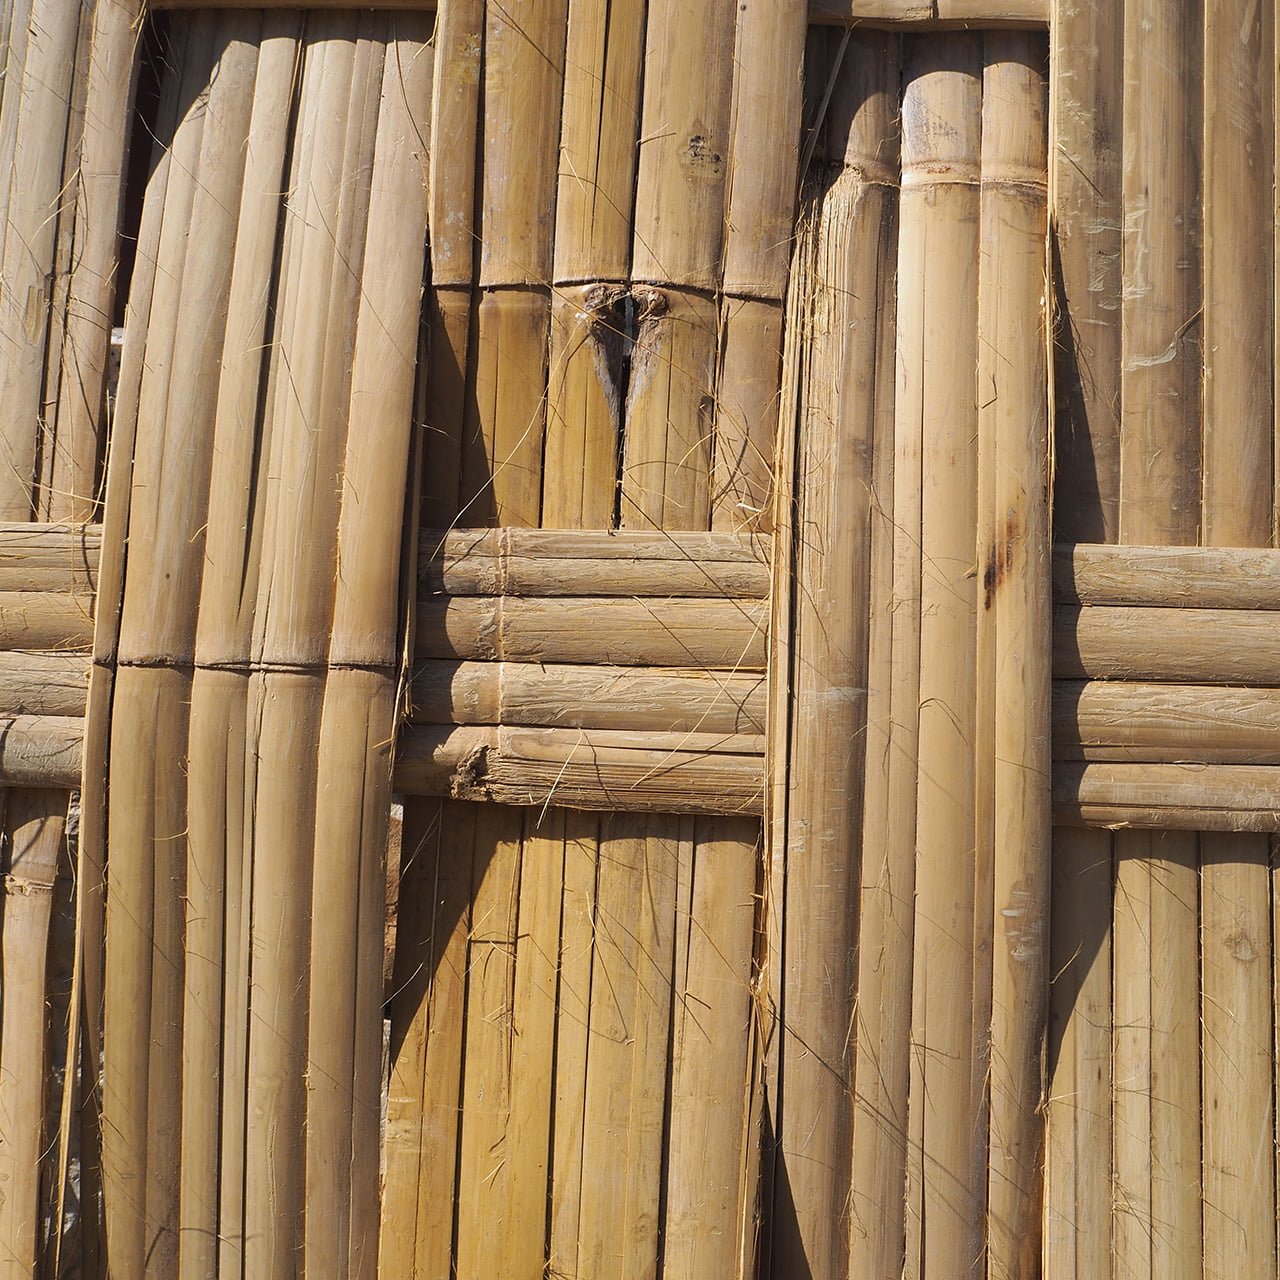 Canne di bamboo – Canne di bambu’